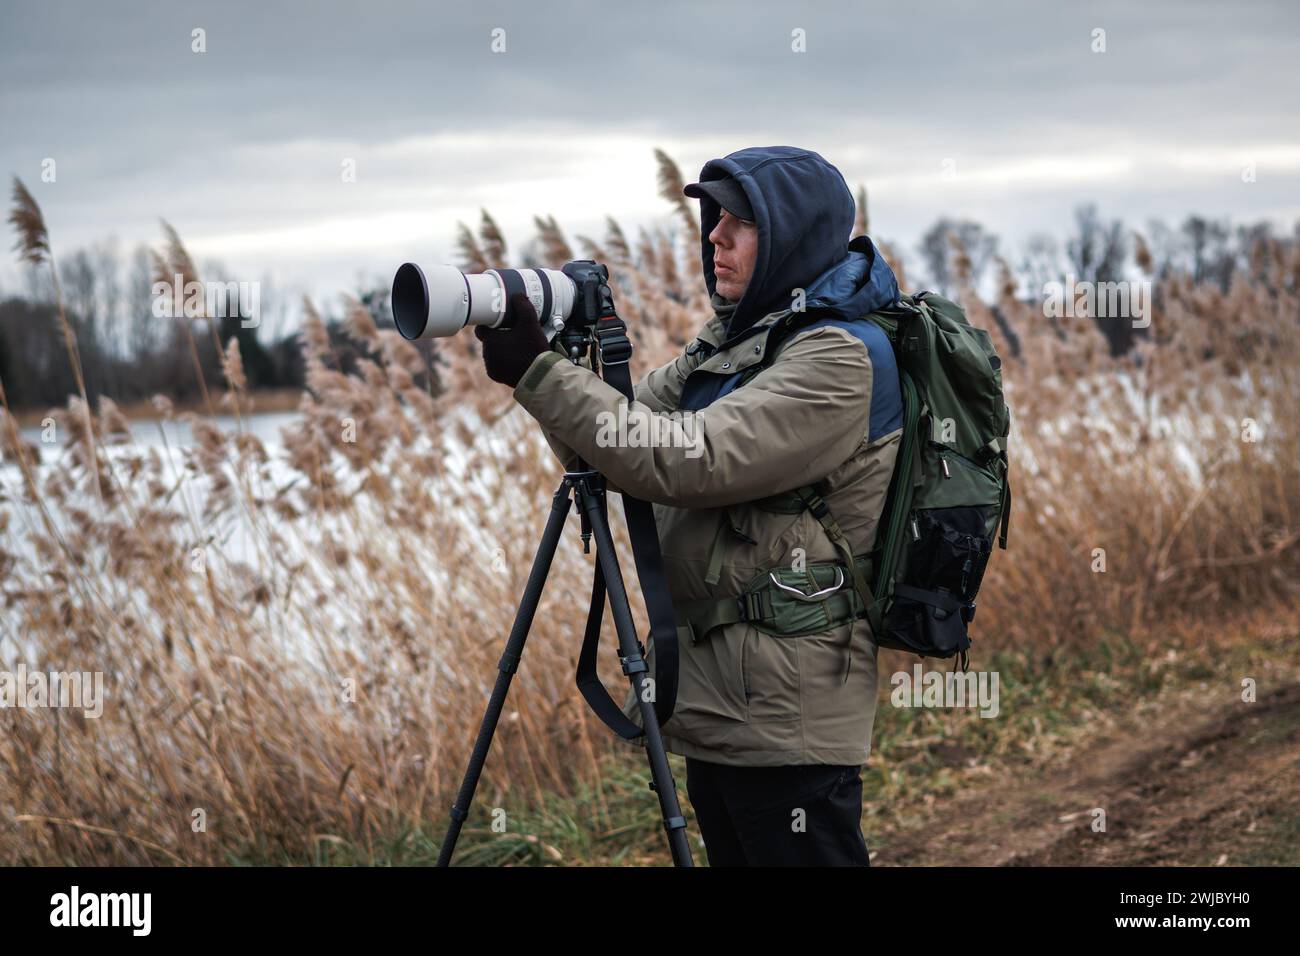 Le photographe installe l'appareil photo sur trépied à l'extérieur. Homme photographiant le paysage ou la faune au lac en hiver Banque D'Images